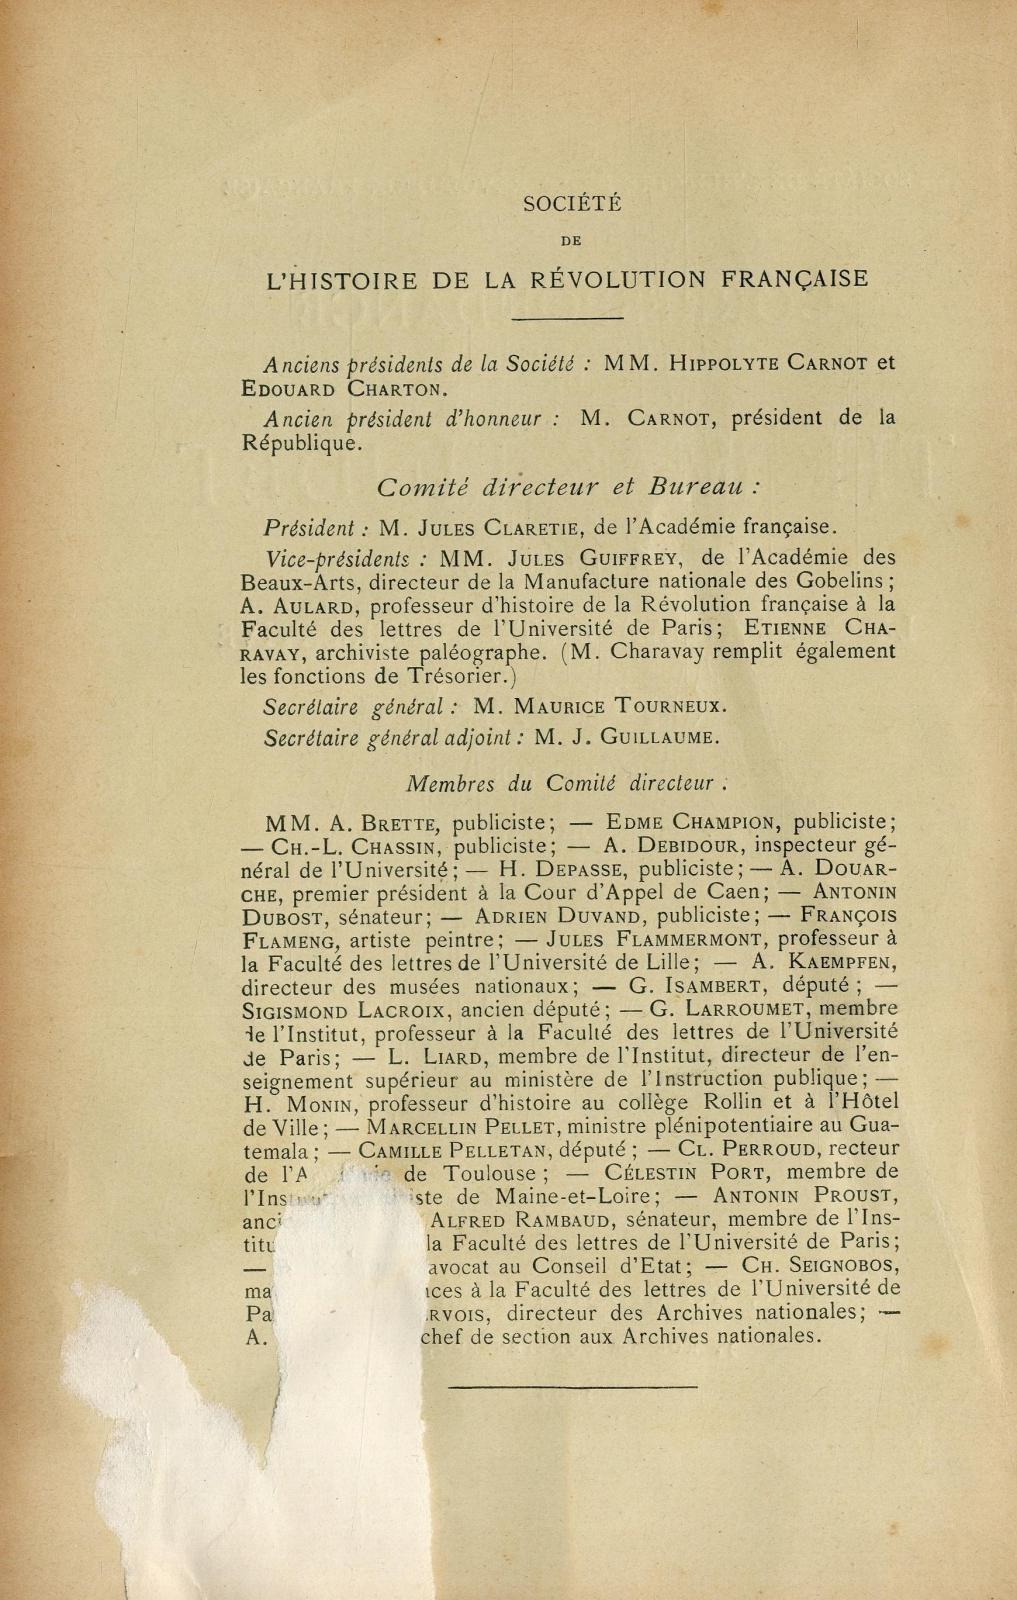 Correspondance de Thomas Lindet pendant la Constituante et la Législative (1789-1792) / publiée par Amand Montier